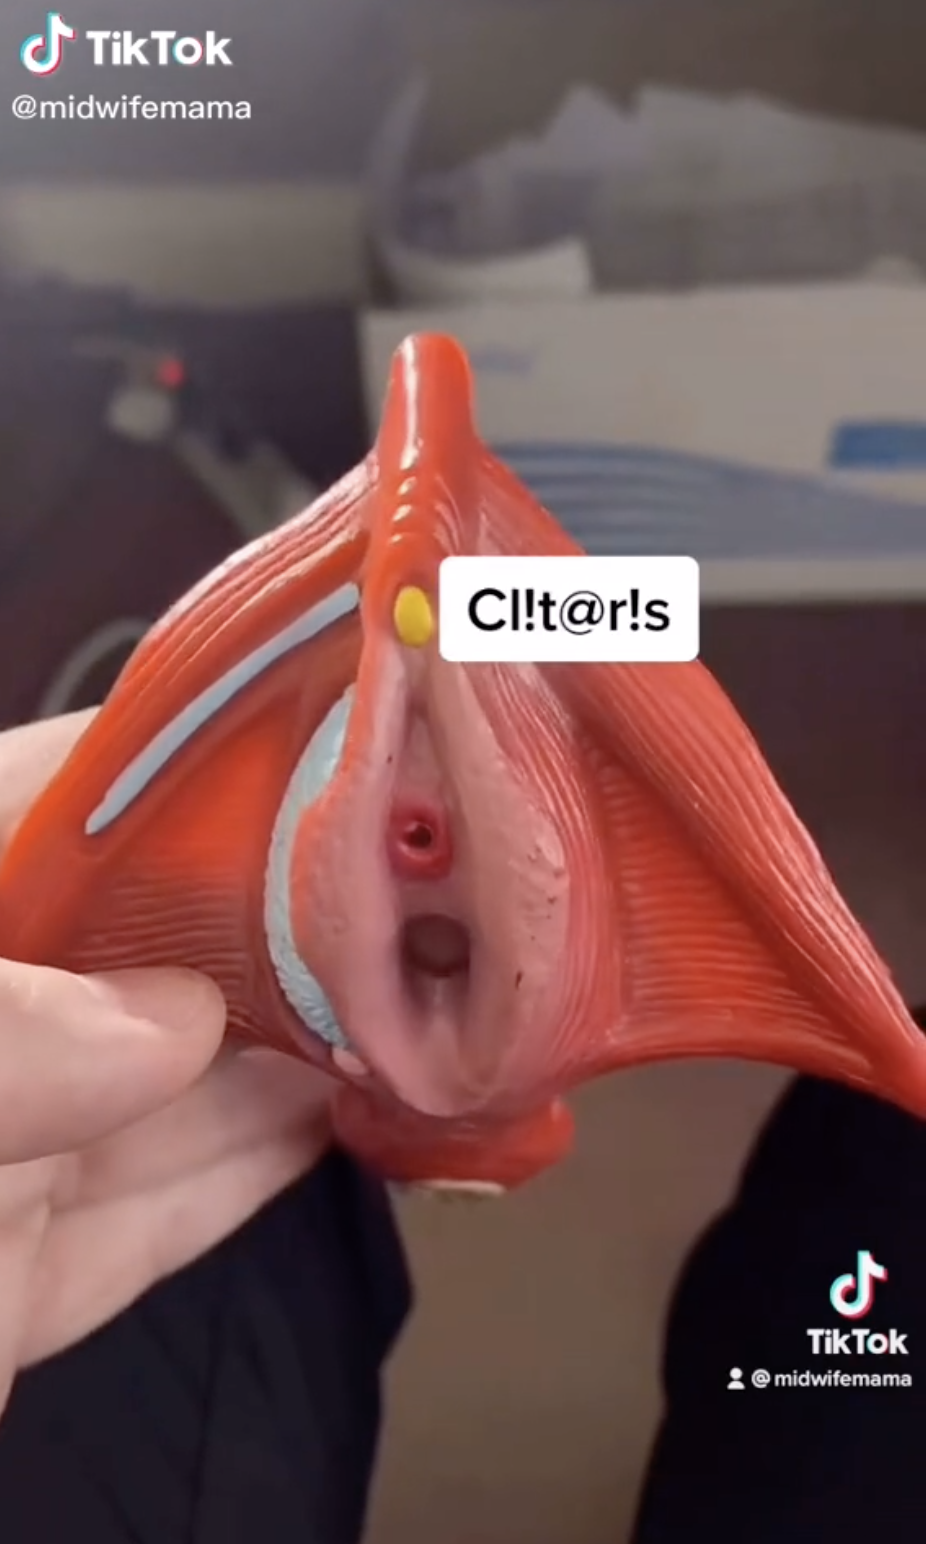 A closeup of a model of a clitoris